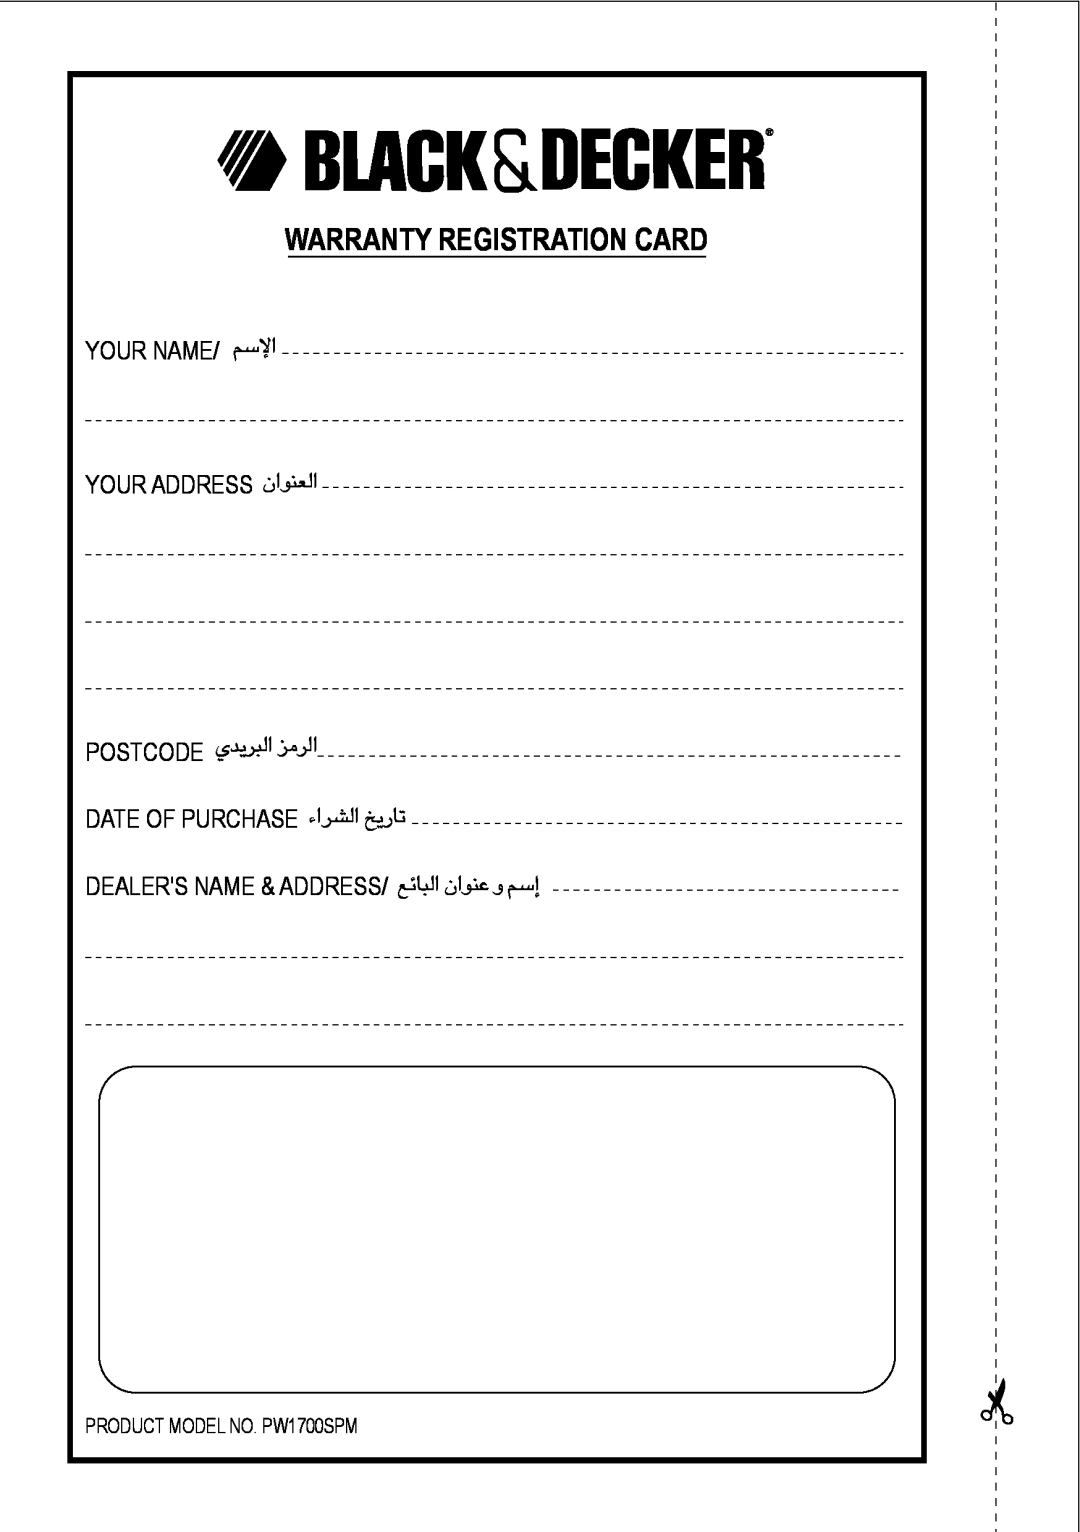 Black & Decker PW1700SPM manual Warranty Registration Card, «ùßr, «∞FMu«Ê, «∞∂d¥bÍ «∞d±e, «∞Ad«¡ ¢U¸¥a, «∞∂Uzl ´Mu«Ê Ë ≈ßr 